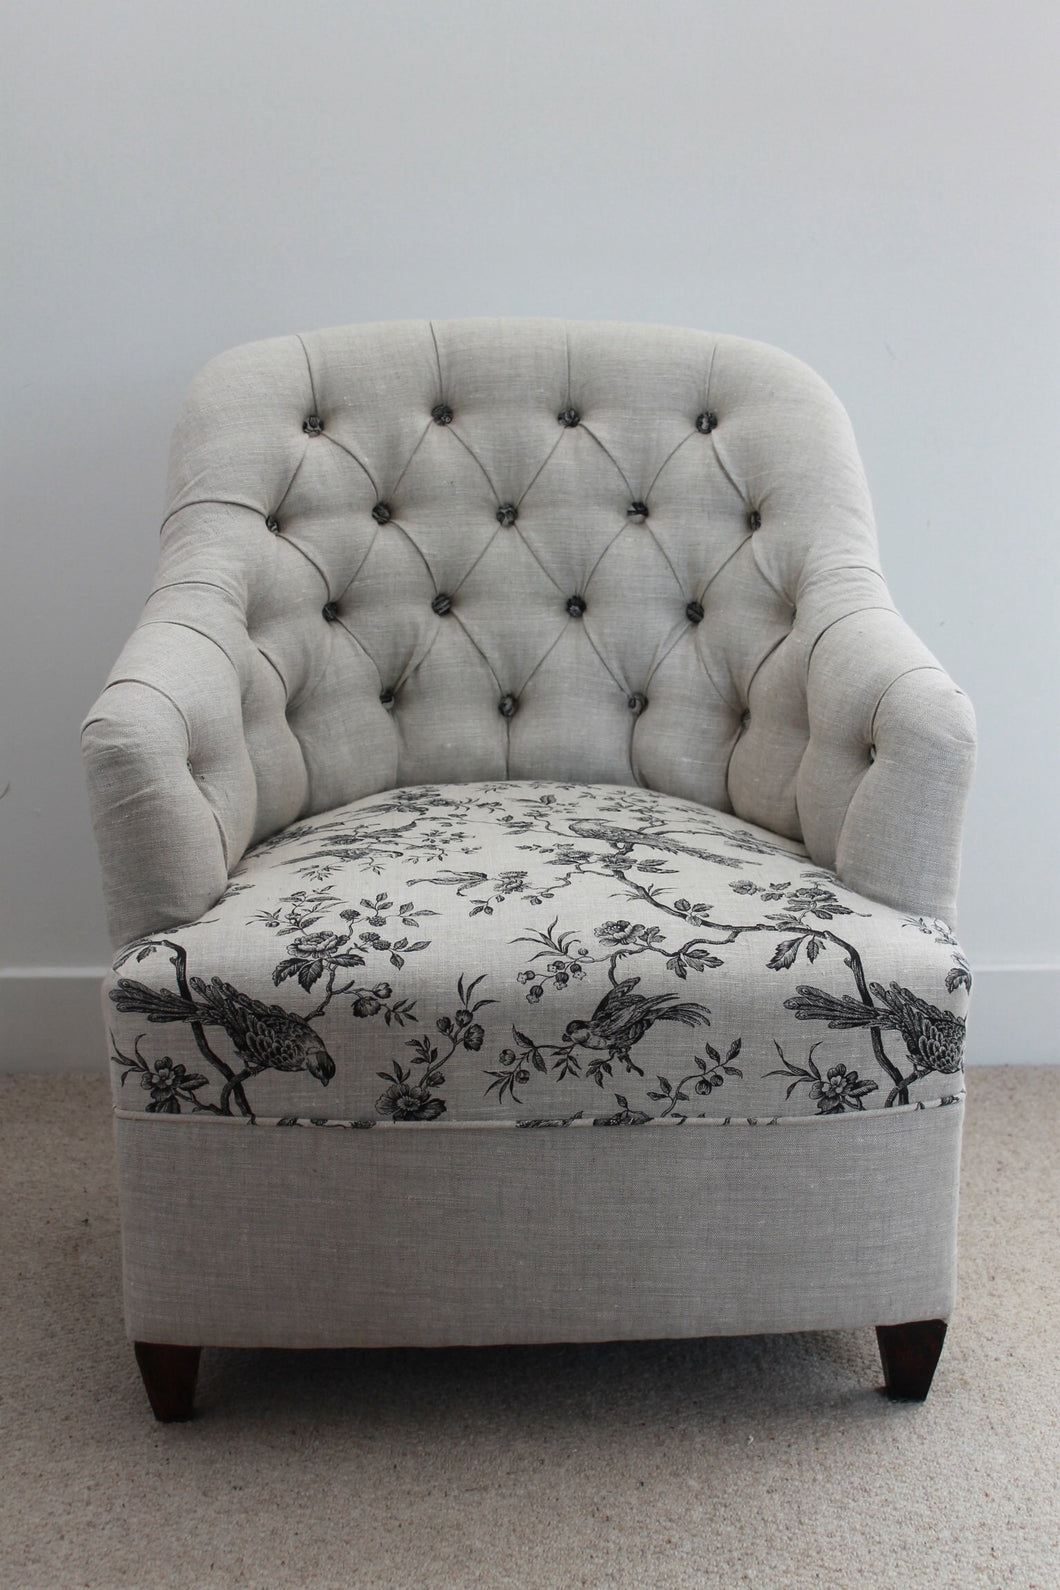 Linen deep buttoned reupholstered chair